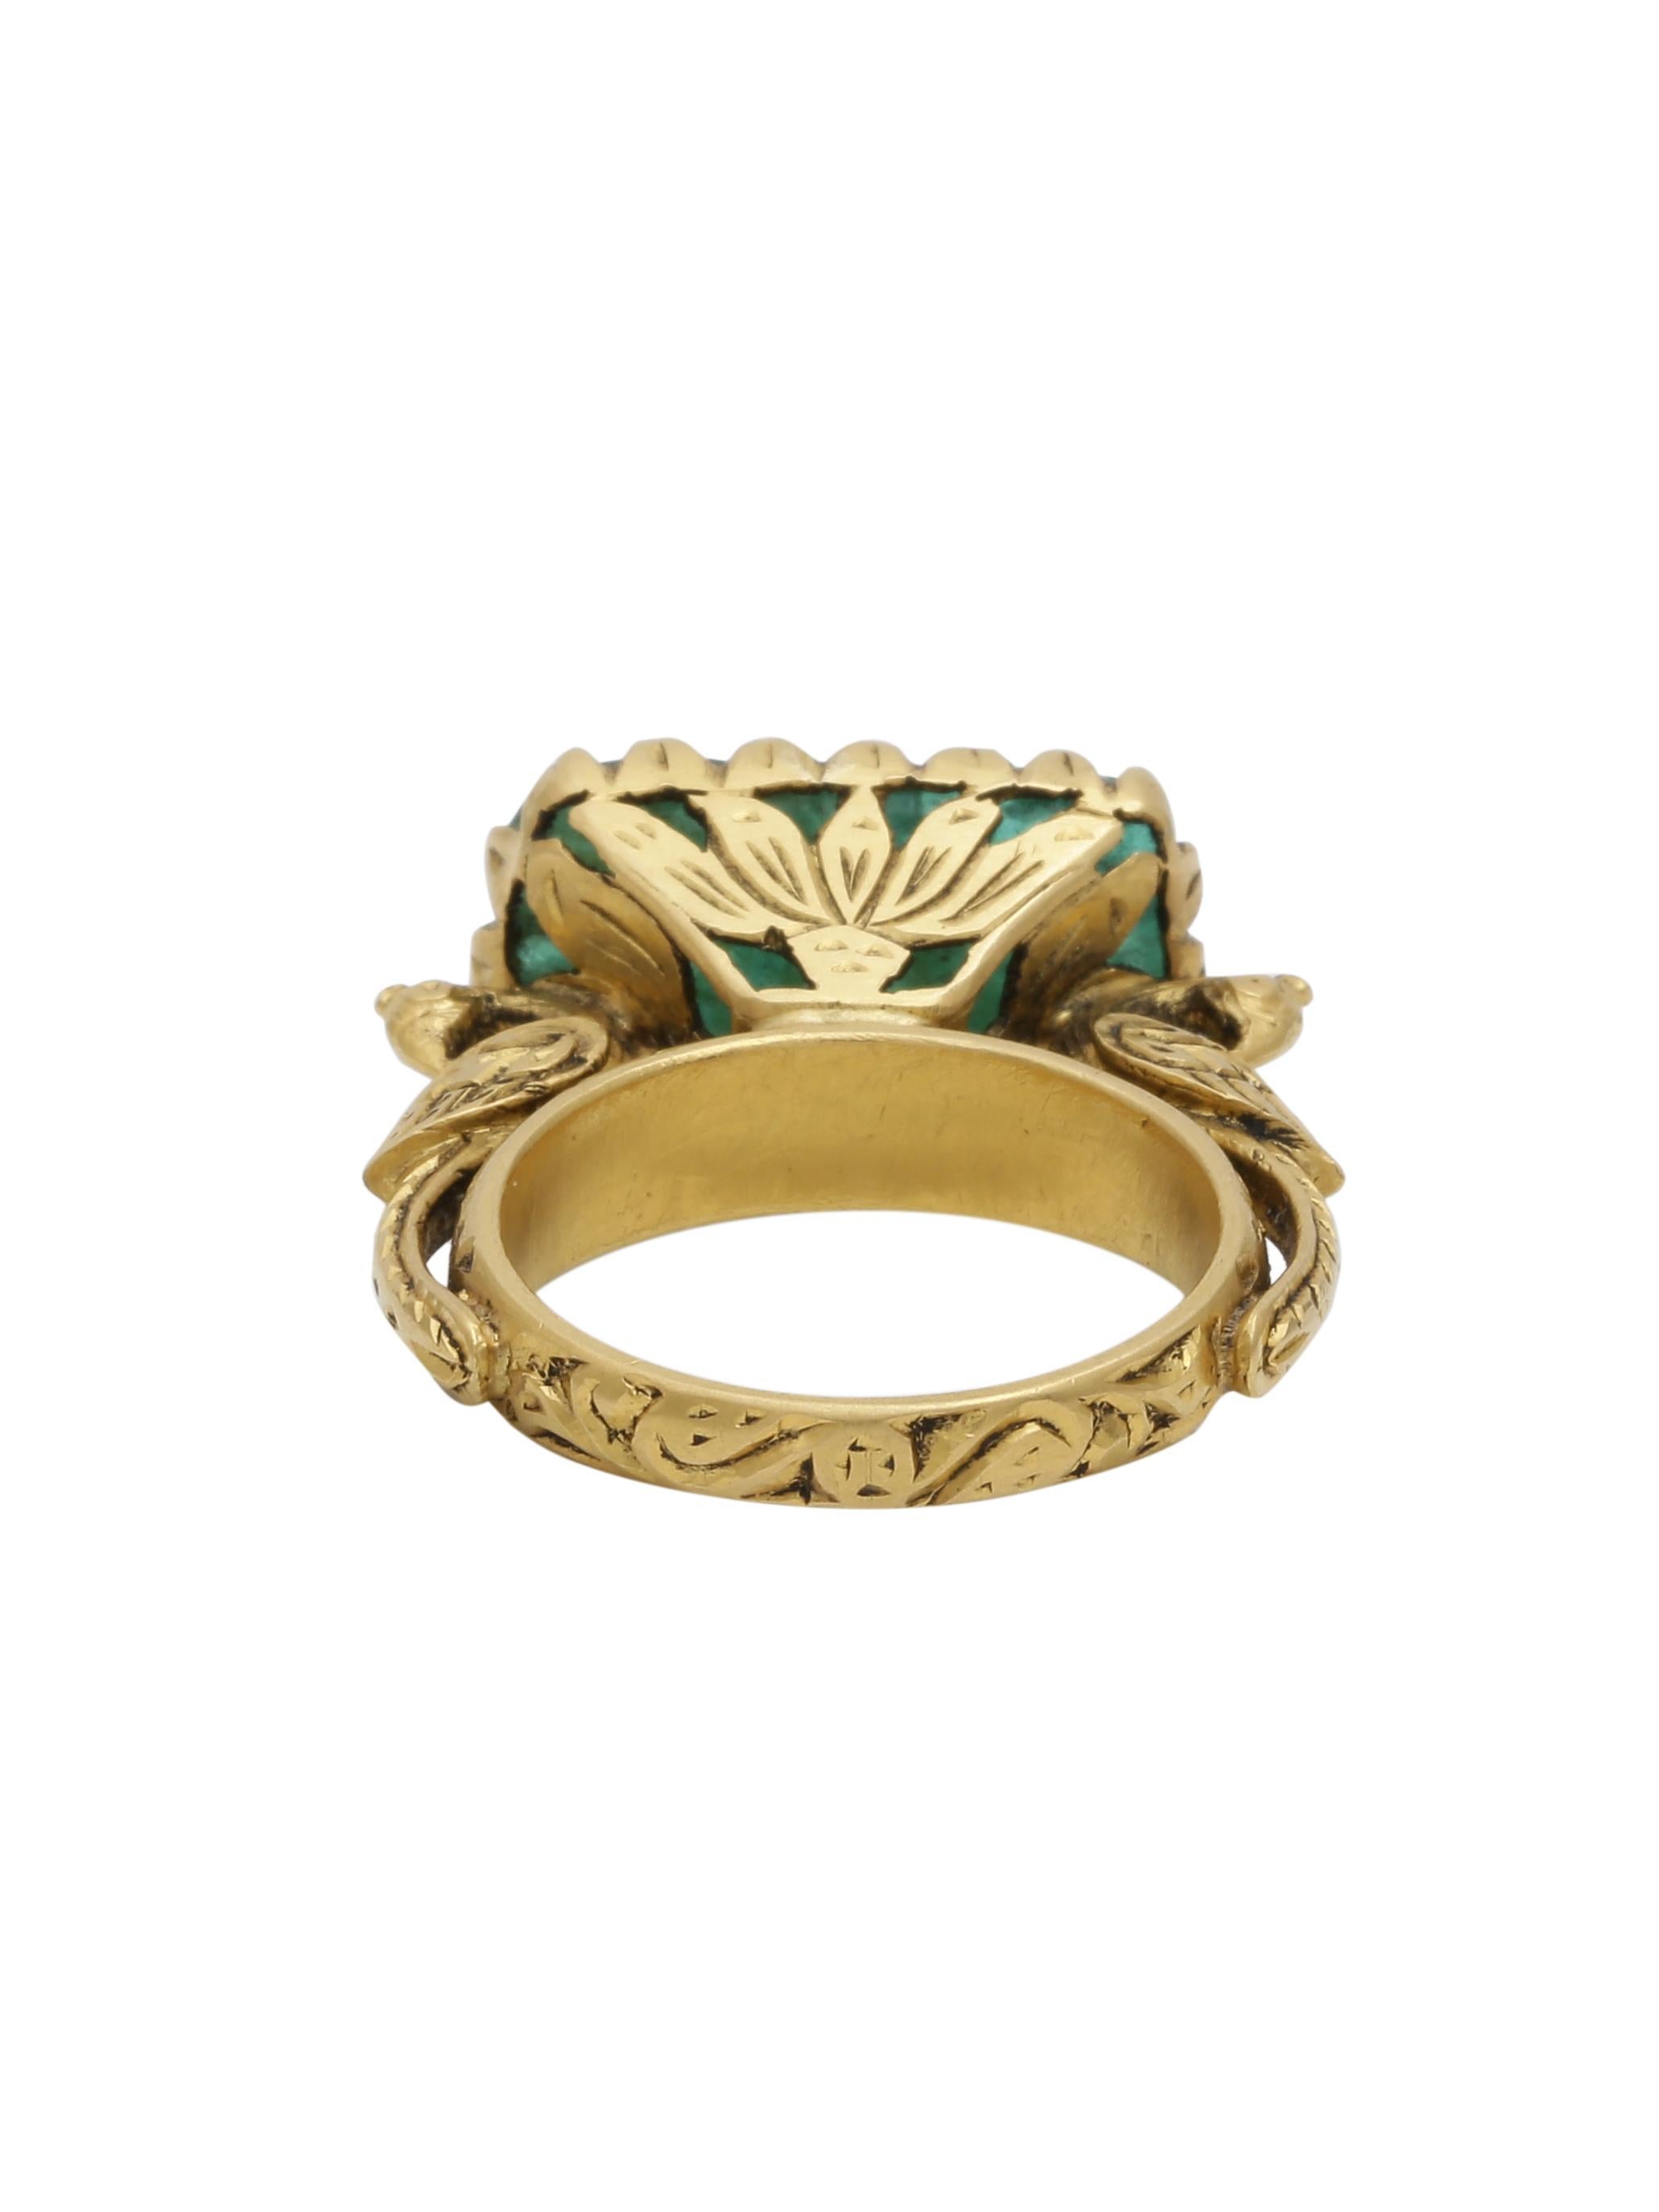 Ein wunderschön von Hand geschnitzter sambischer Smaragd in einem handgefertigten 22K Goldring. Der Ring ist aufwendig vergoldet, und direkt unter dem Stein sind 2 prächtige Pfauen zu sehen, die den Stein halten. Der geschnitzte Stein ist von der